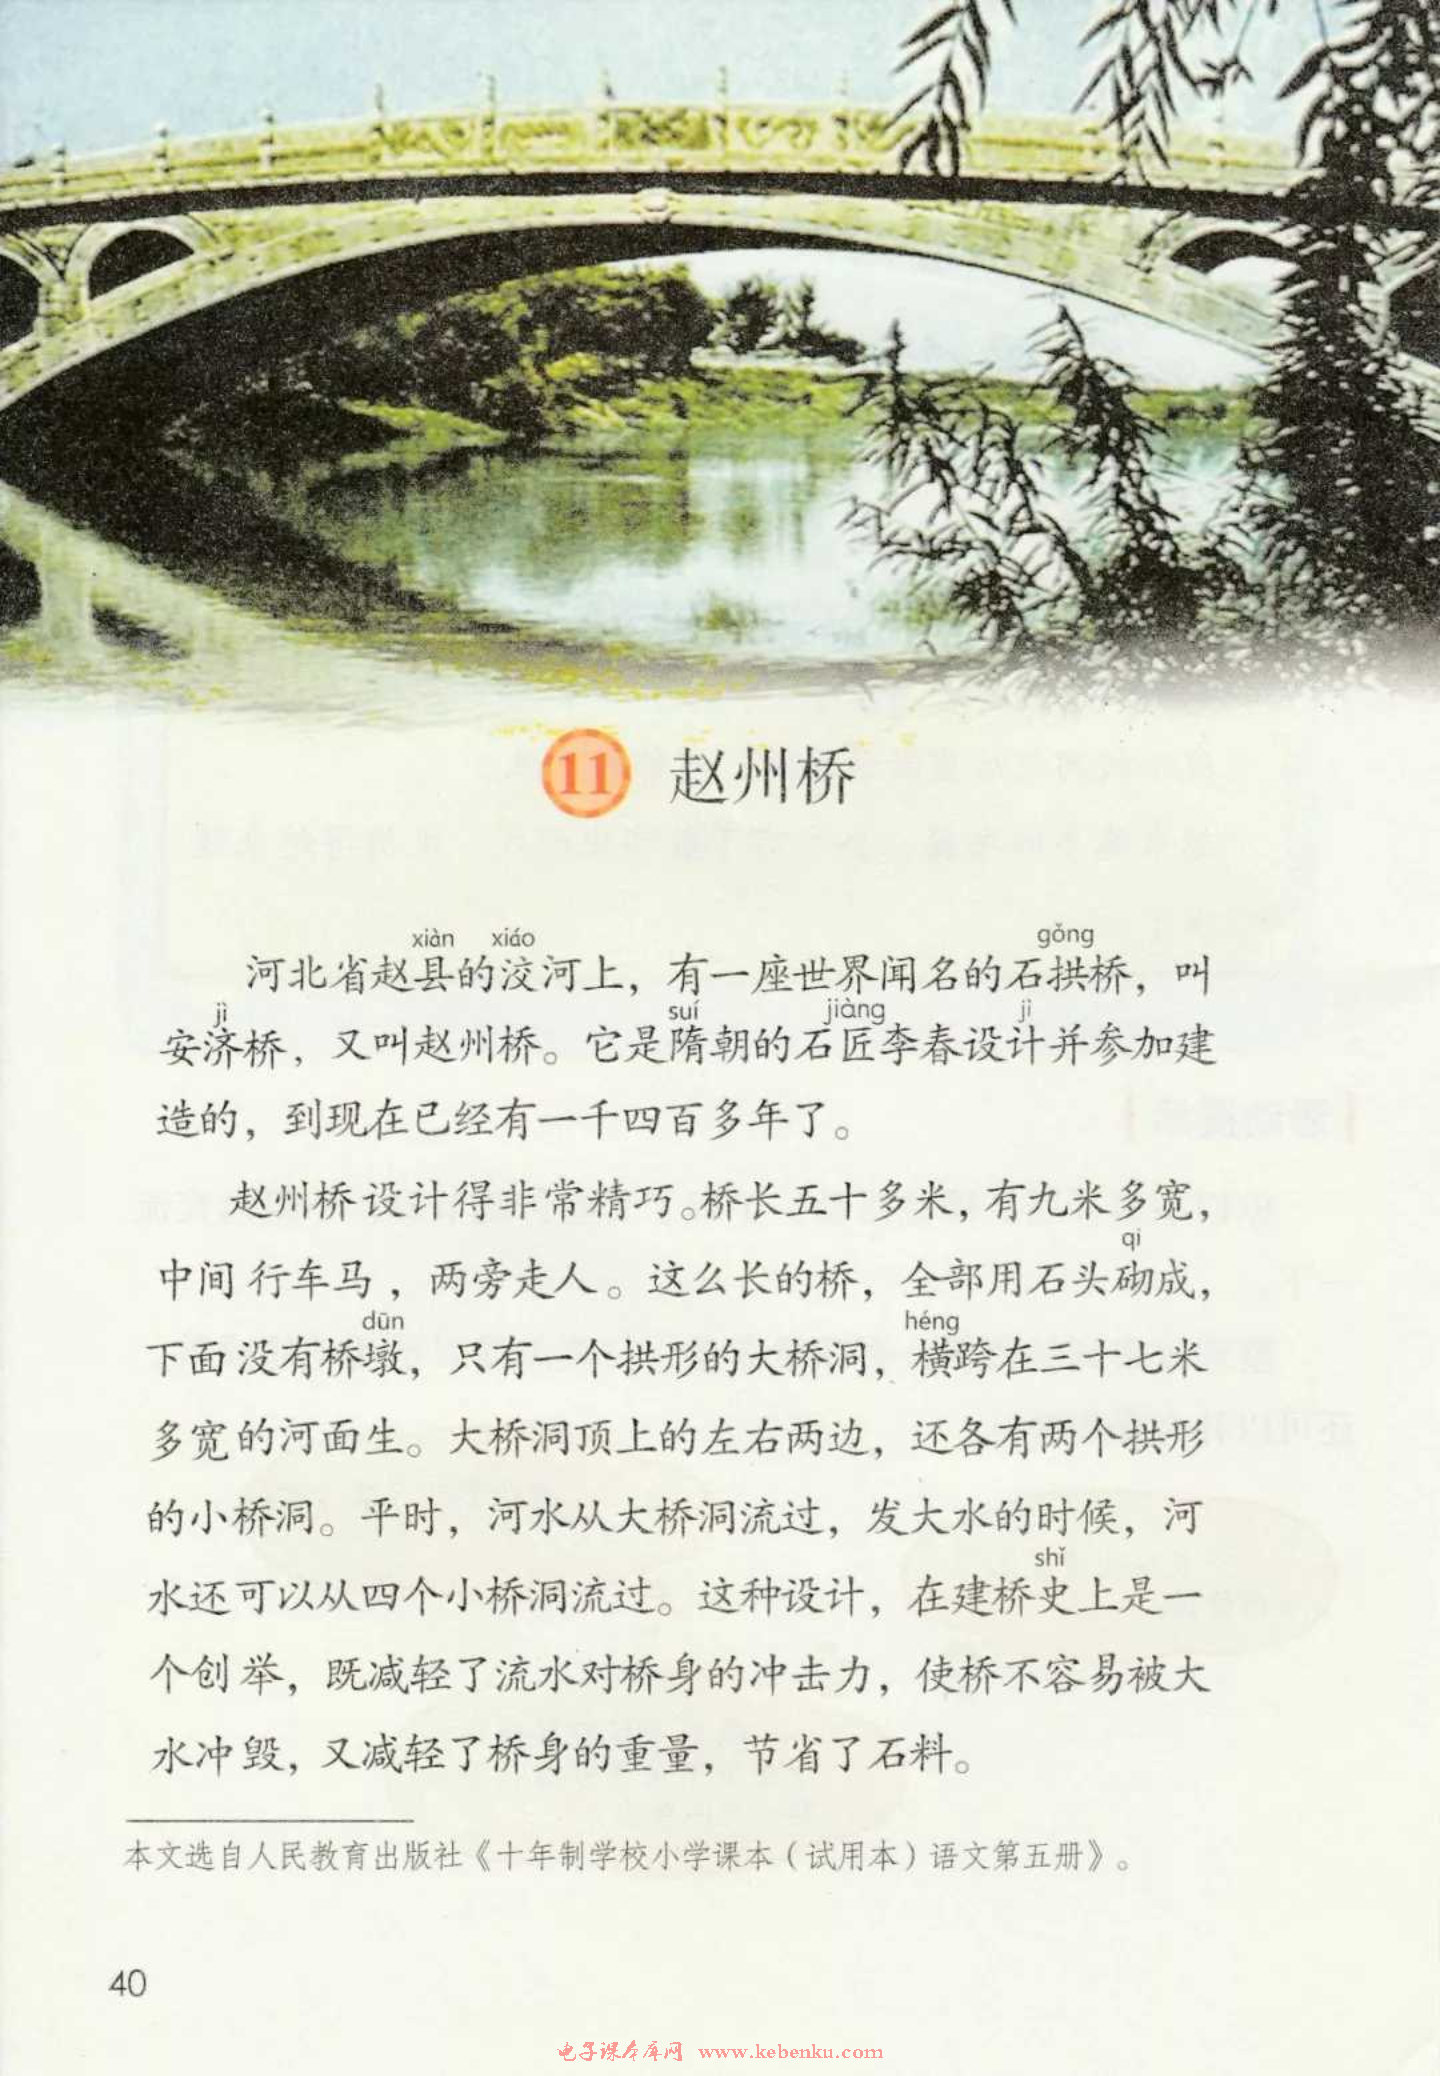 「11」. 赵州桥